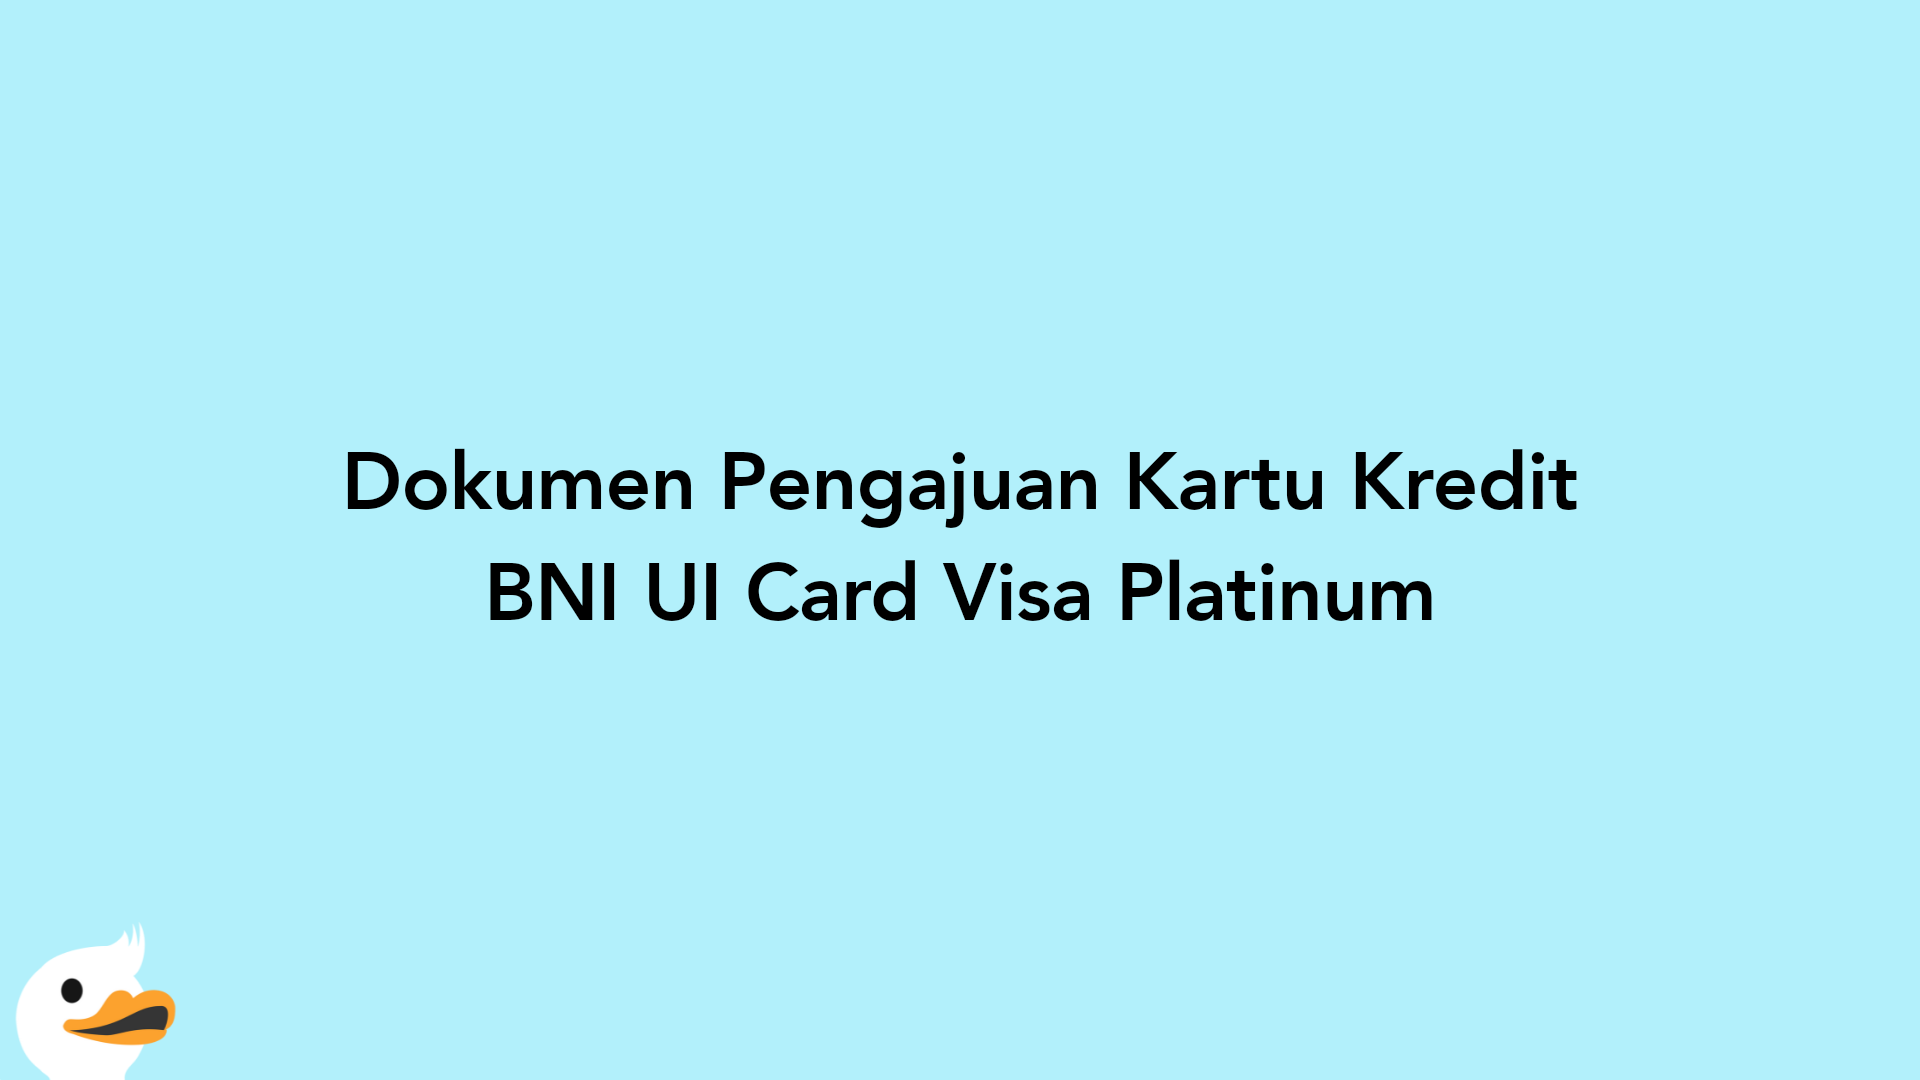 Dokumen Pengajuan Kartu Kredit BNI UI Card Visa Platinum